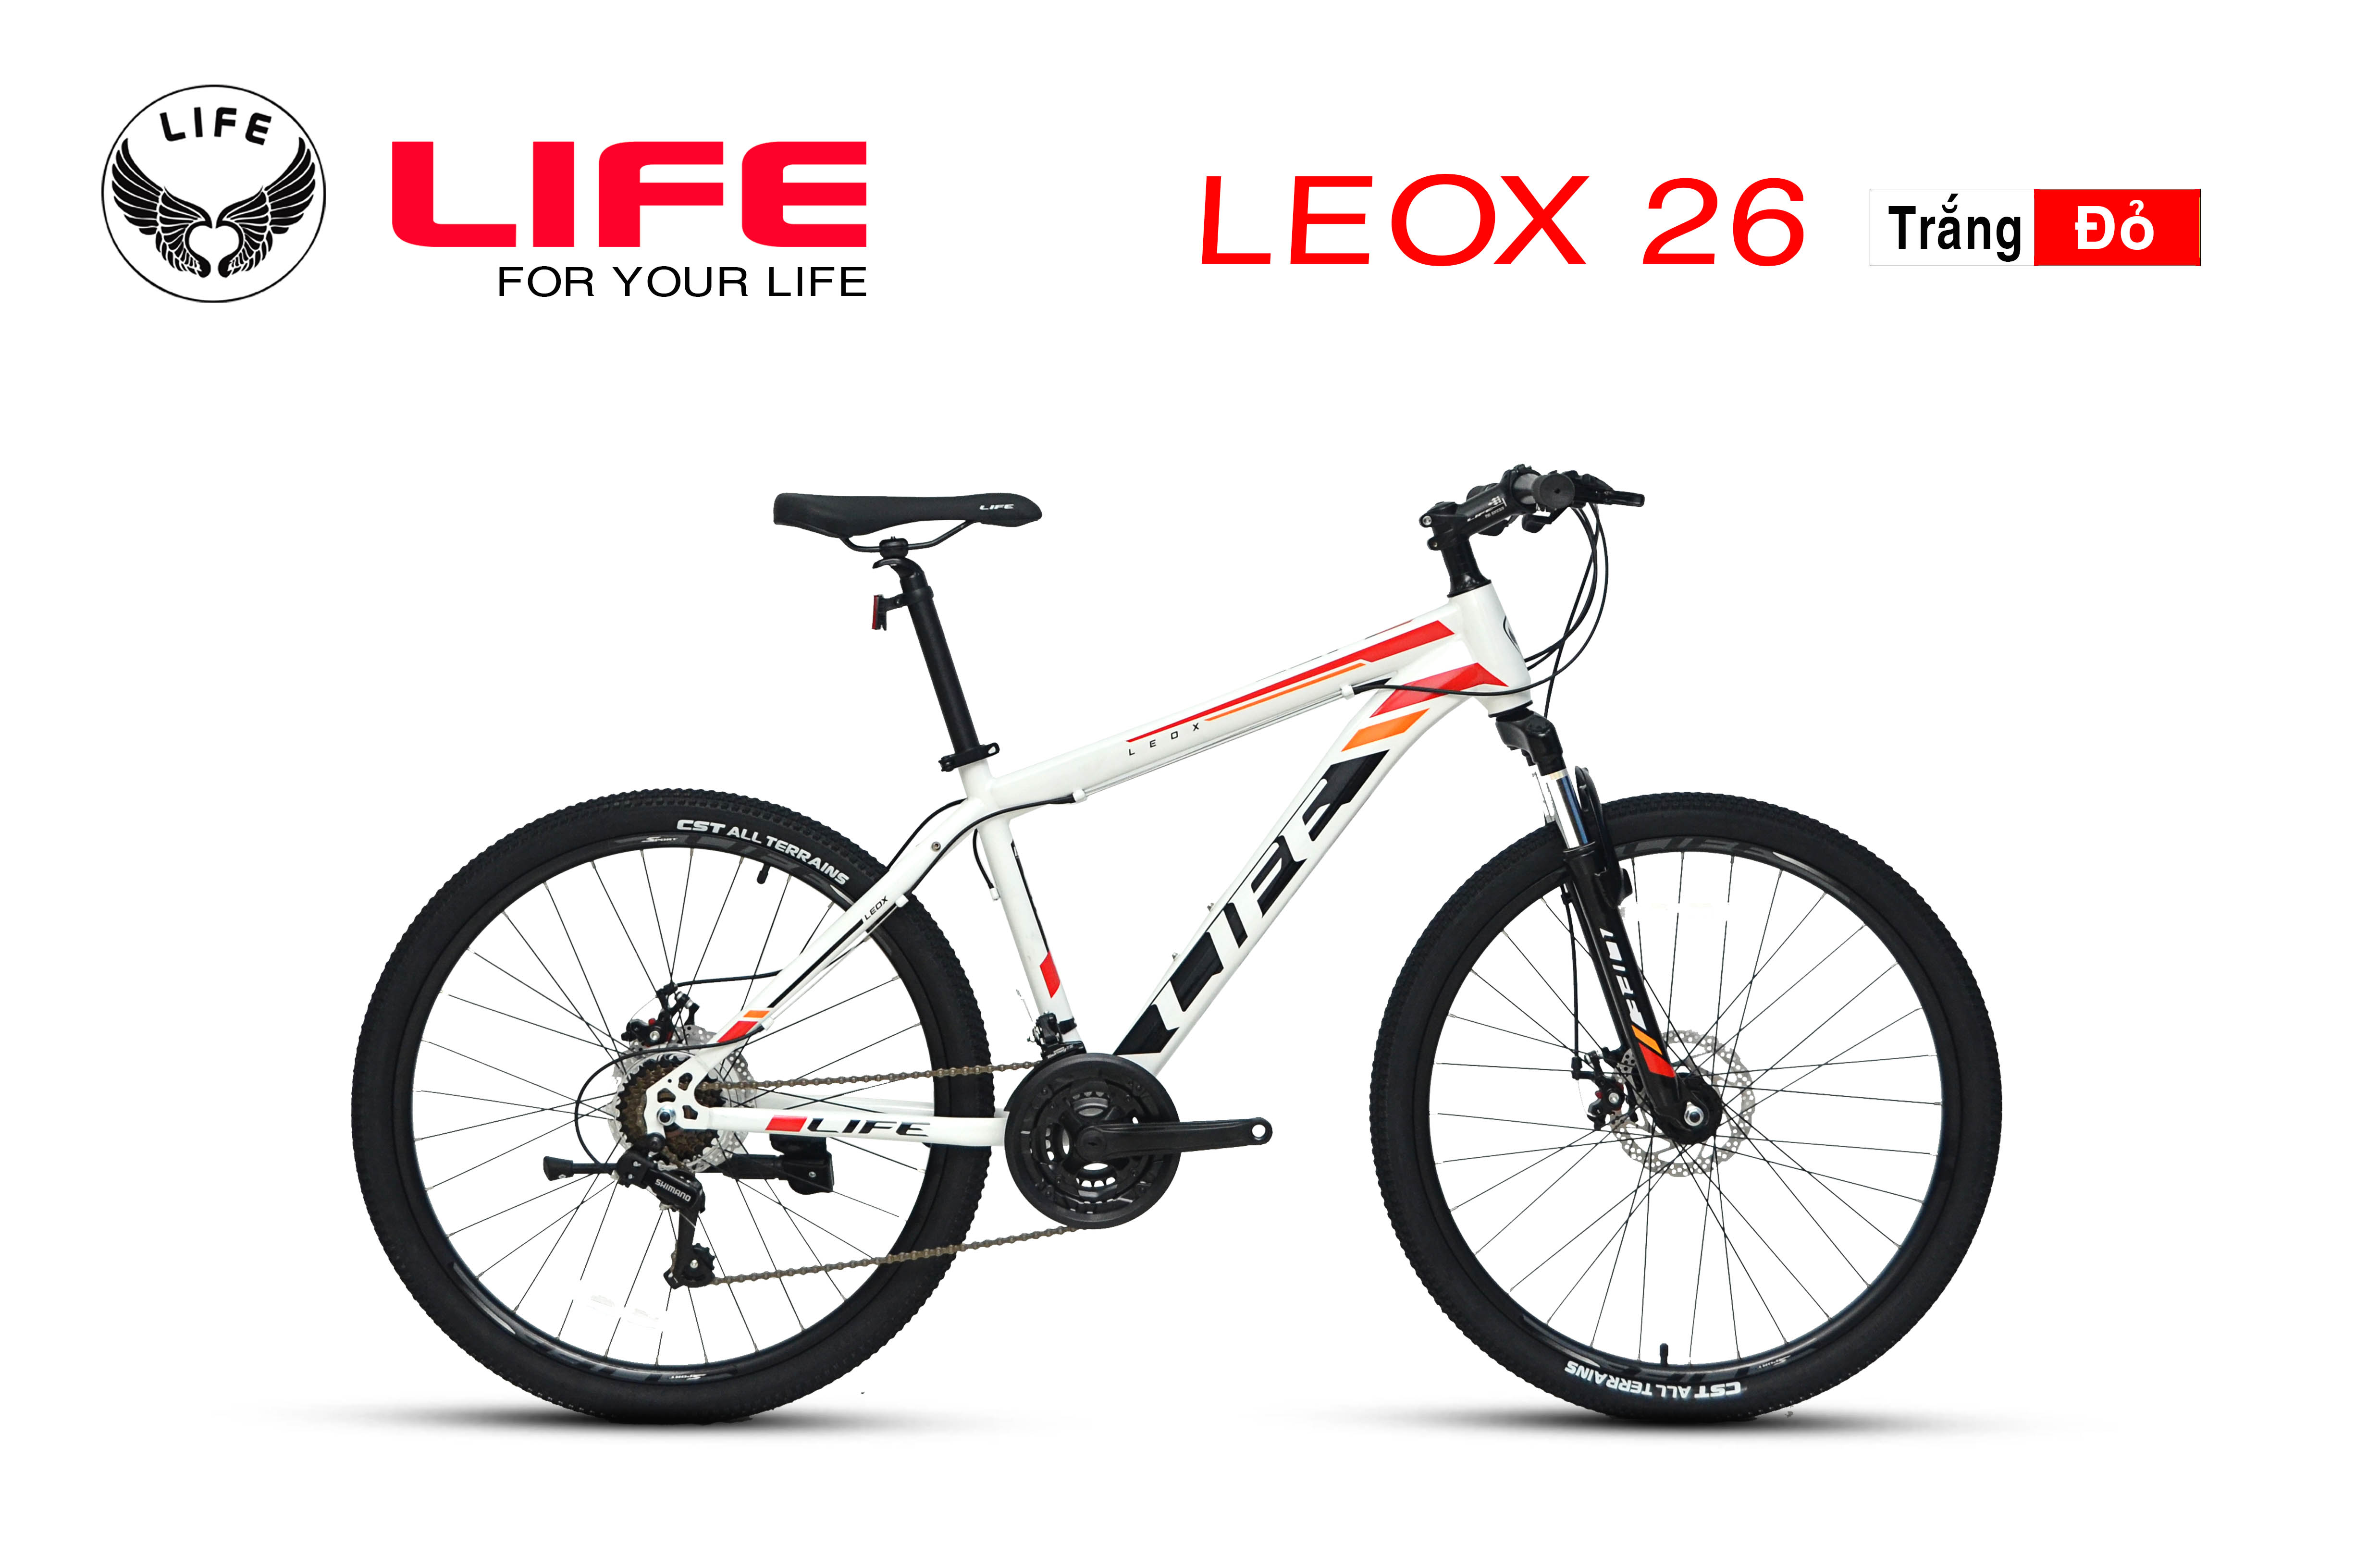 Sở hữu chiếc xe đạp địa hình LIFE LEOX 26, bạn sẽ được trải nghiệm cảm giác mạnh mẽ, tự do và thư giãn khi chinh phục mọi địa hình. Với thiết kế đẹp mắt, chất liệu cao cấp và tính năng đa dạng, chiếc xe này sẽ làm hài lòng mọi tín đồ thể thao ưa thích cảm giác mạnh mẽ và thử thách bản thân.